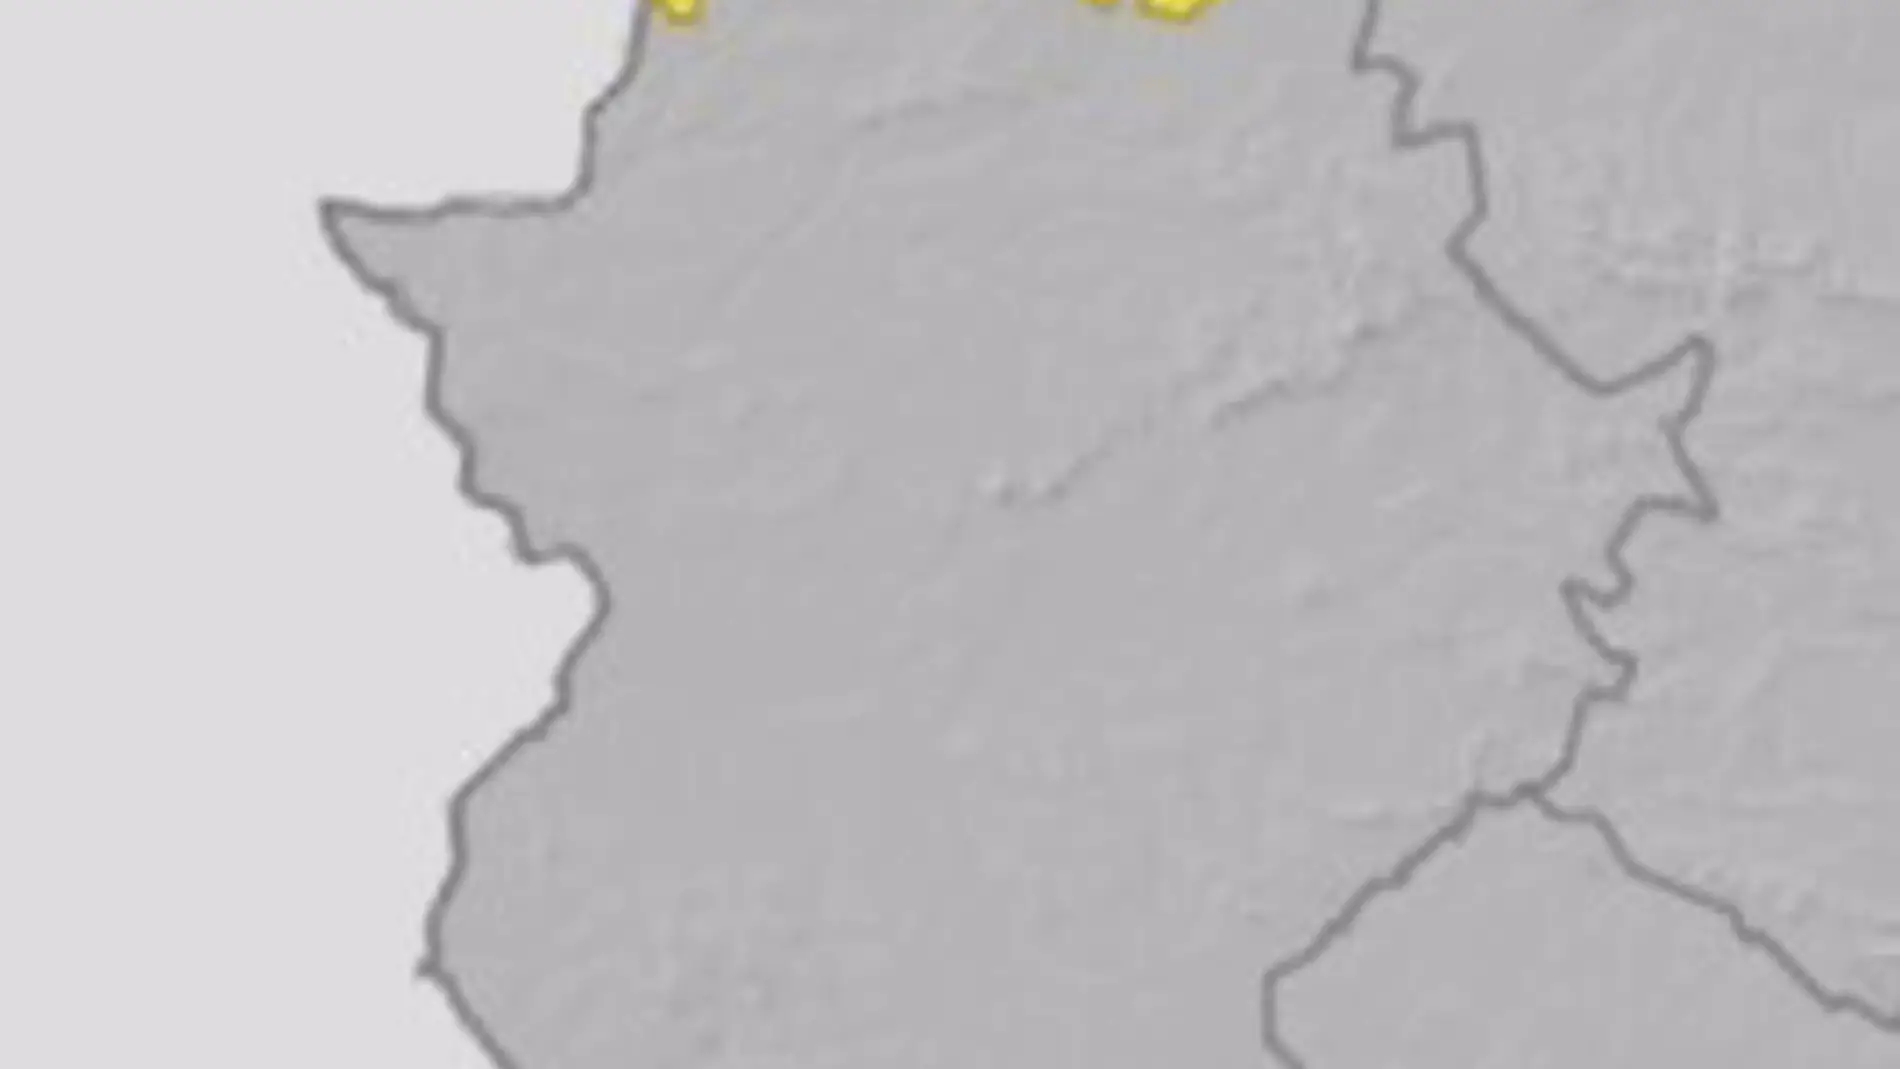 Este martes continúa activa la alerta amarilla por lluvias en el norte de la provincia de Cáceres